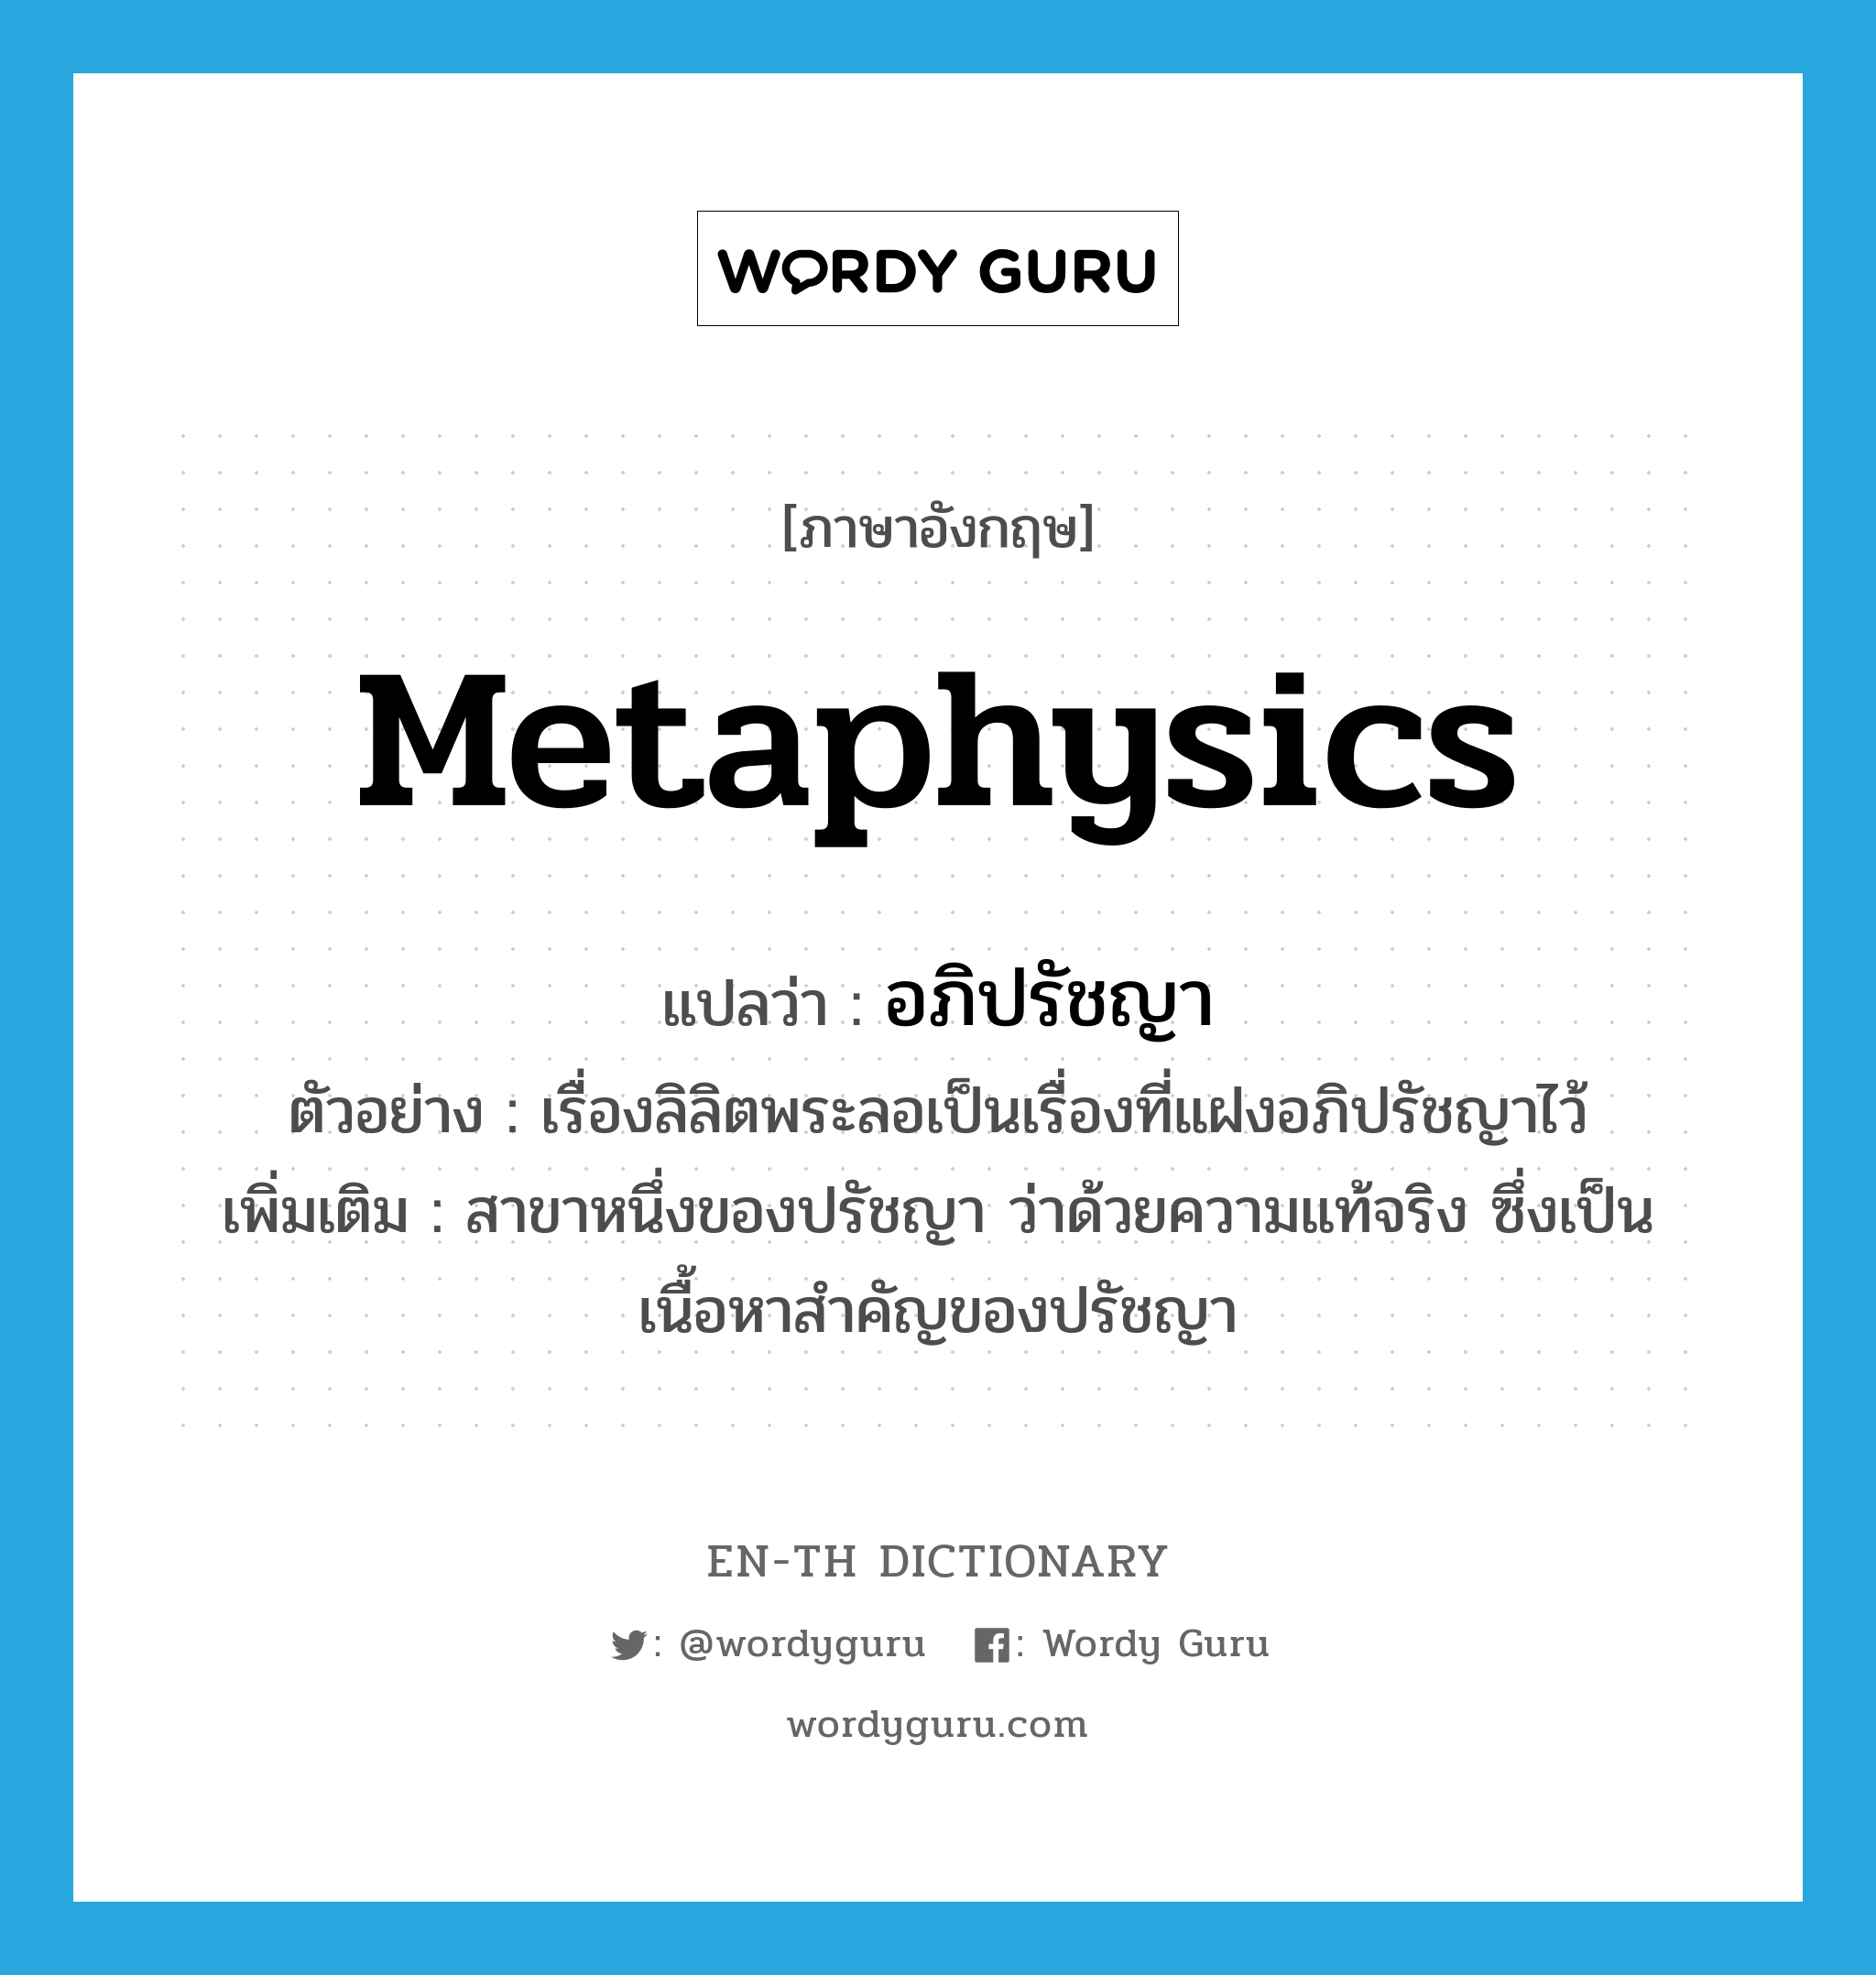 metaphysics แปลว่า?, คำศัพท์ภาษาอังกฤษ metaphysics แปลว่า อภิปรัชญา ประเภท N ตัวอย่าง เรื่องลิลิตพระลอเป็นเรื่องที่แฝงอภิปรัชญาไว้ เพิ่มเติม สาขาหนึ่งของปรัชญา ว่าด้วยความแท้จริง ซึ่งเป็นเนื้อหาสำคัญของปรัชญา หมวด N